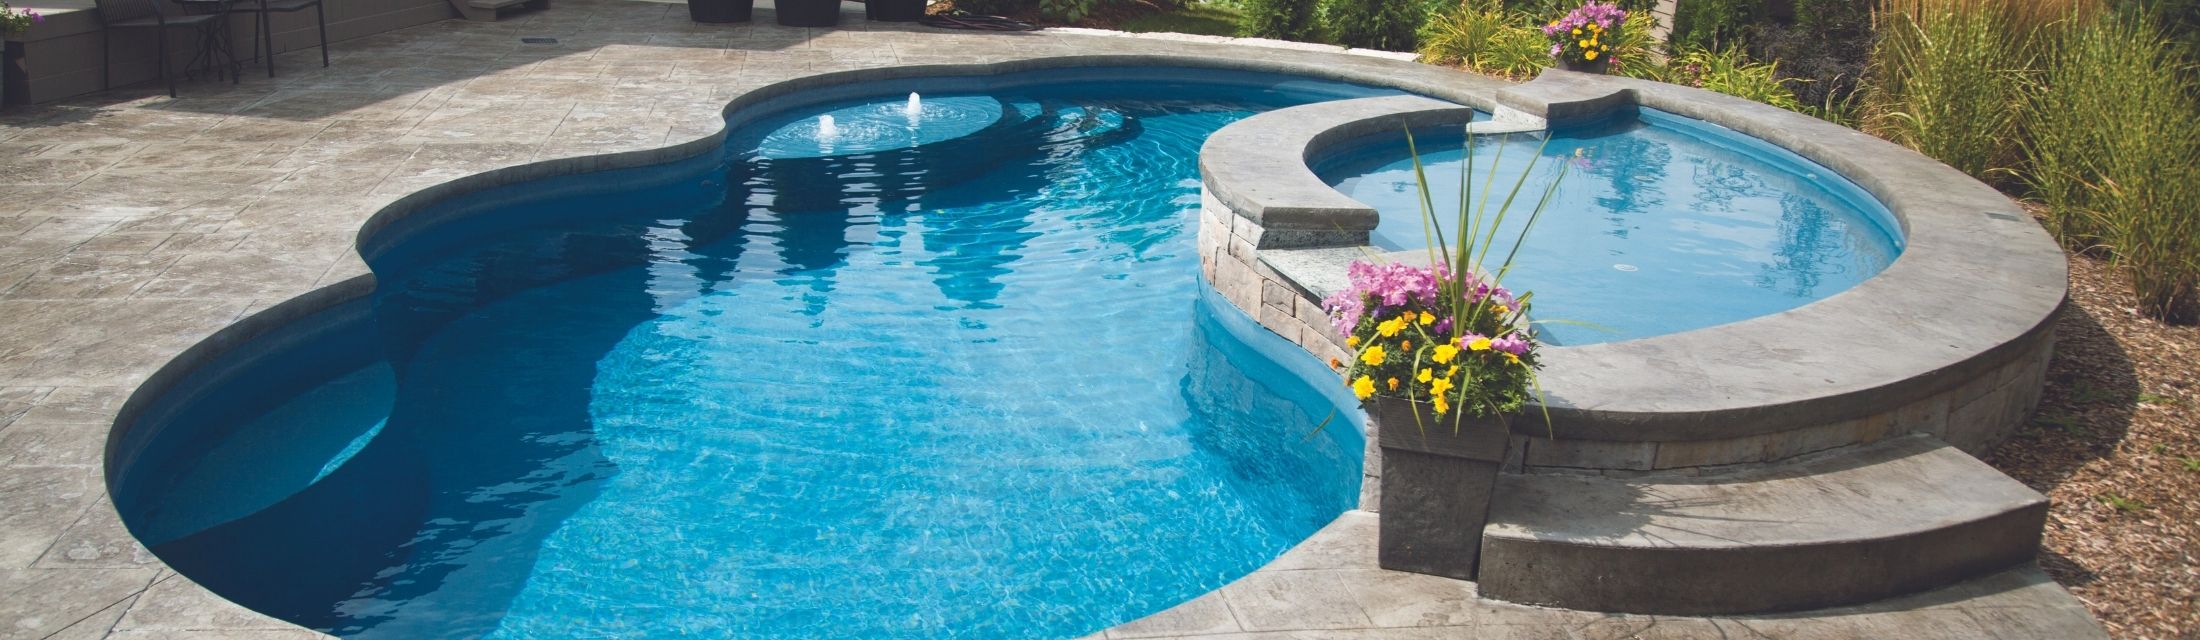 Narellan-Pools-Resolute-Fiberglass-Swimming-Pool-and-Resolute-Splash-Deck-with-waterline-tiles